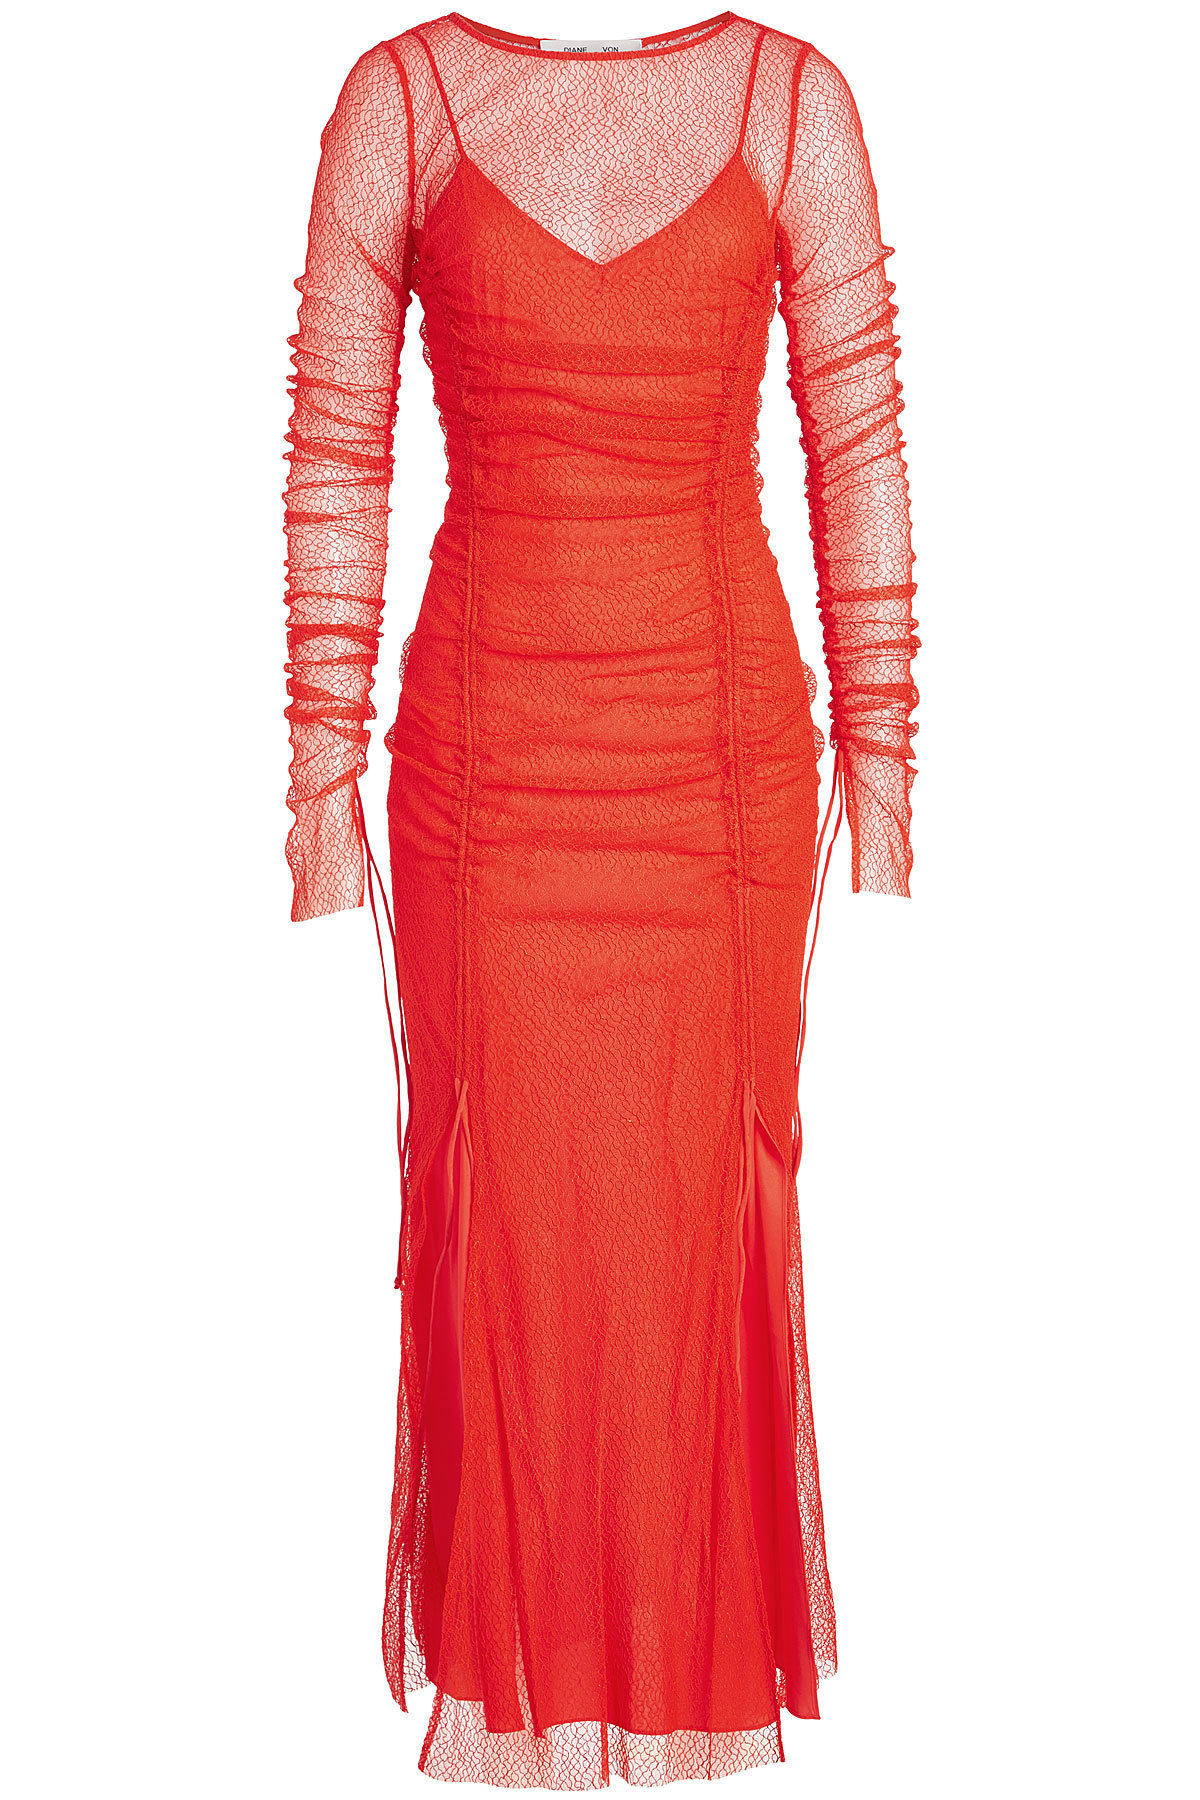 Diane von Furstenberg - Maxi Fitted Lace Dress